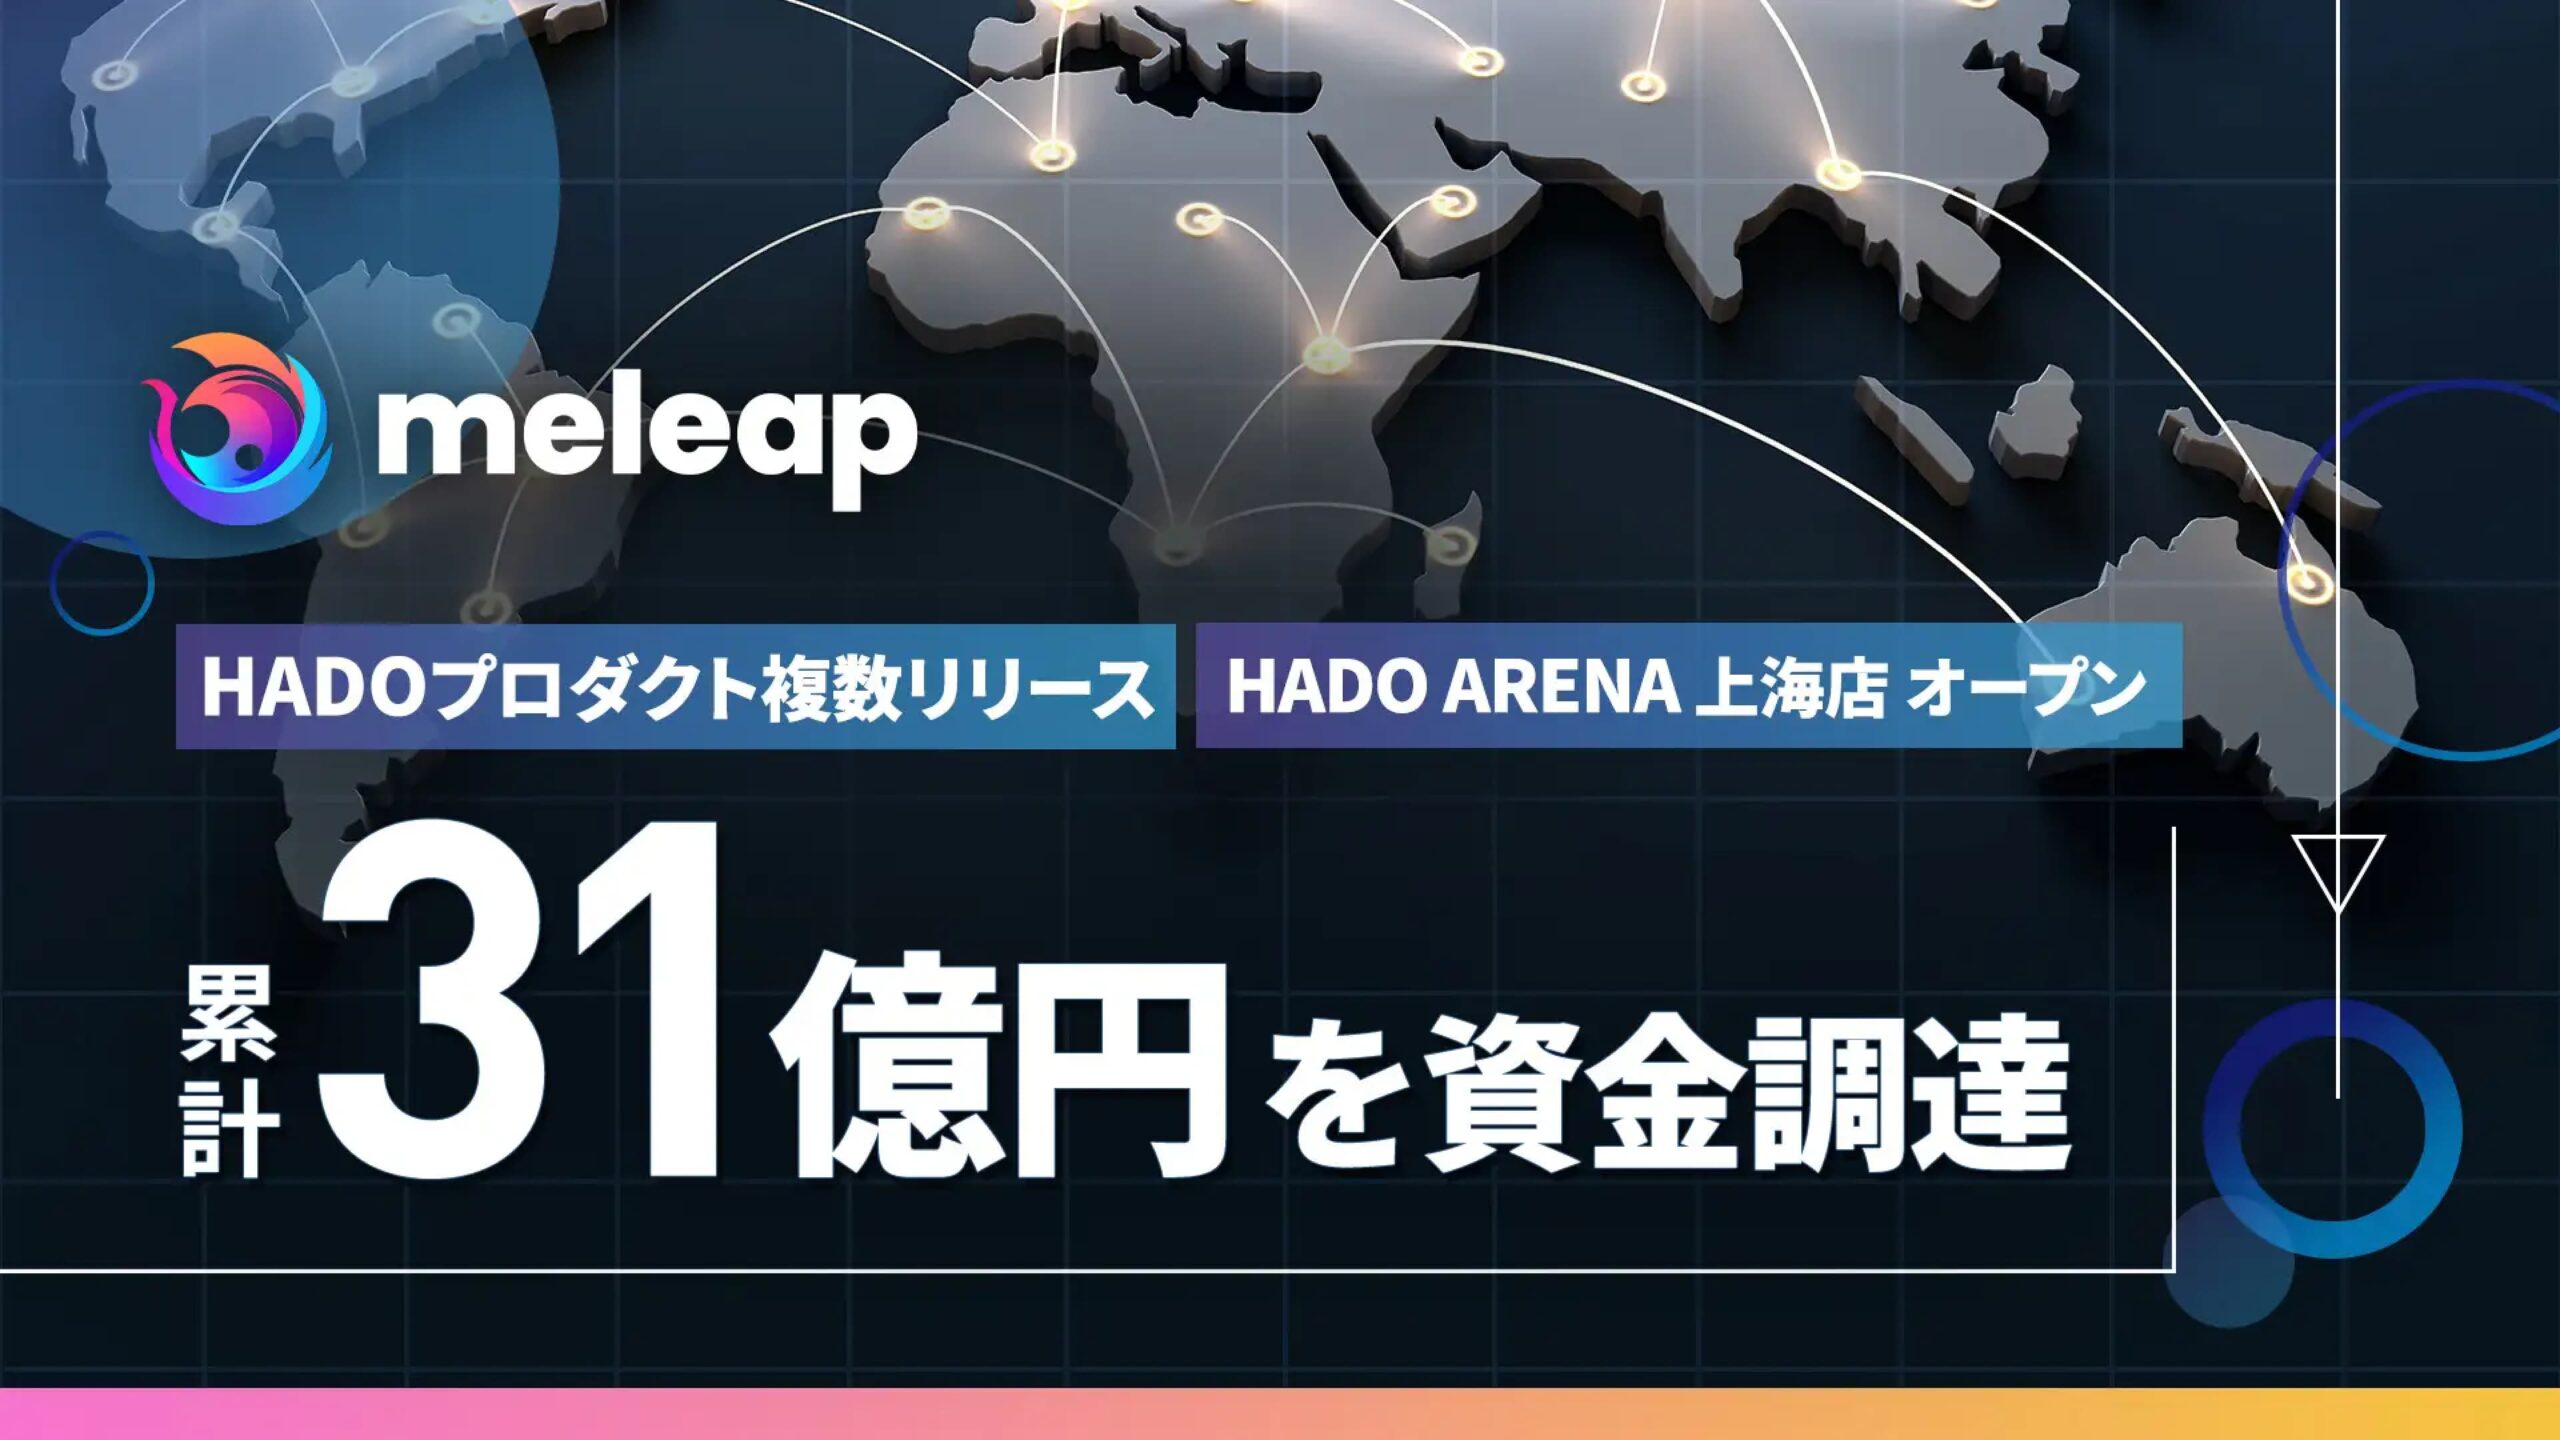 ARスポーツ「HADO」をグローバル展開する株式会社meleap、シリーズCの資金調達を実施ー累計資金調達額 31億円に